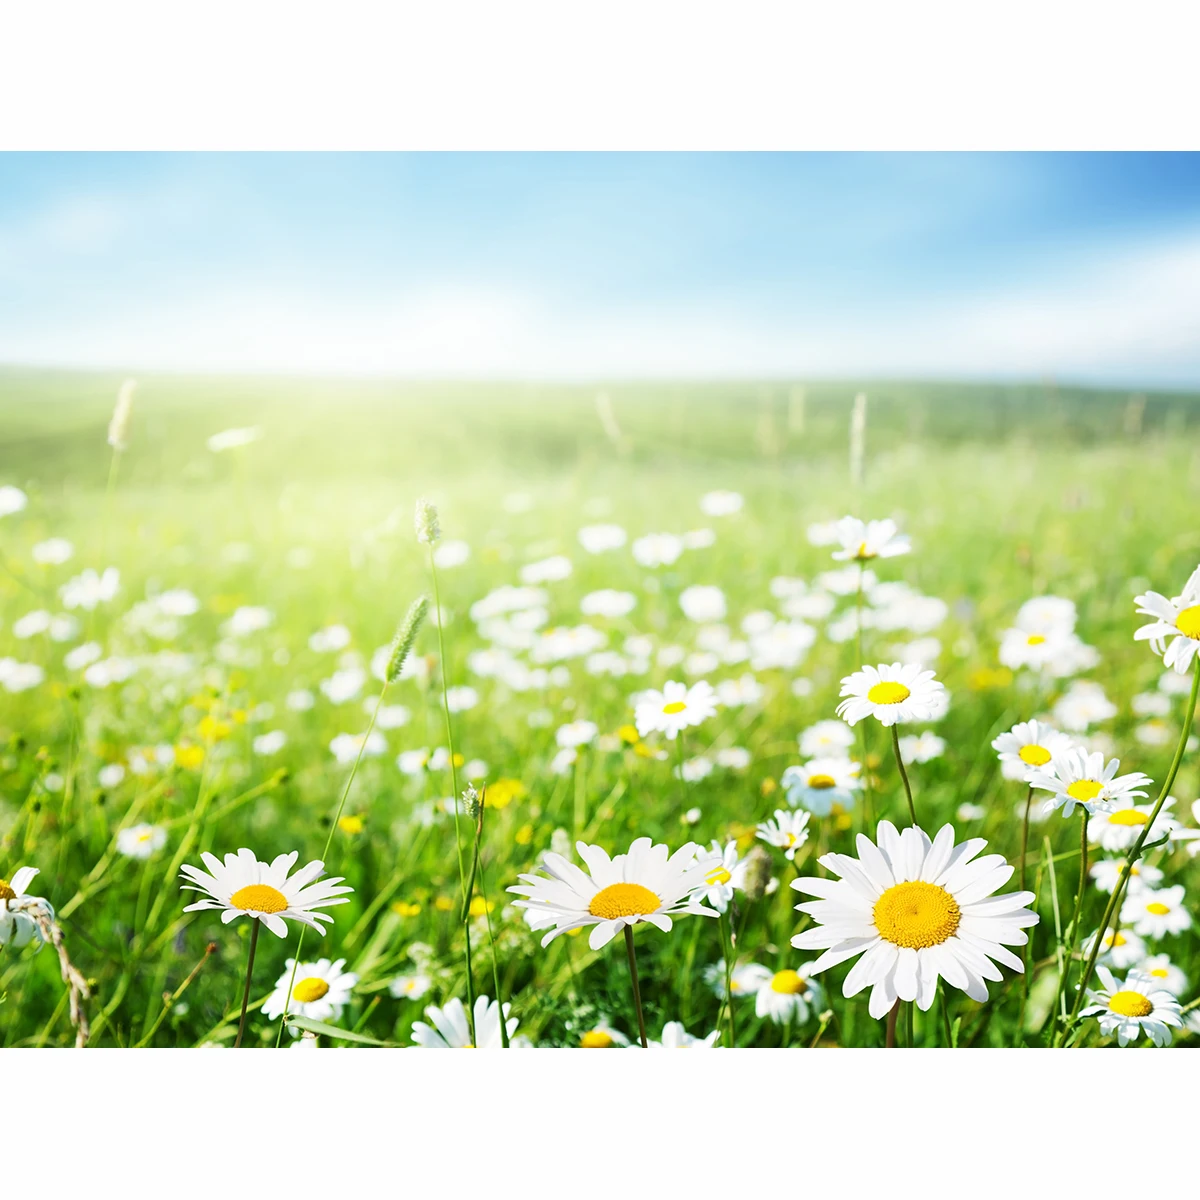 Allenjoy фотографический фон поле маргариток цветы Луг пейзаж ромашки Солнечный для